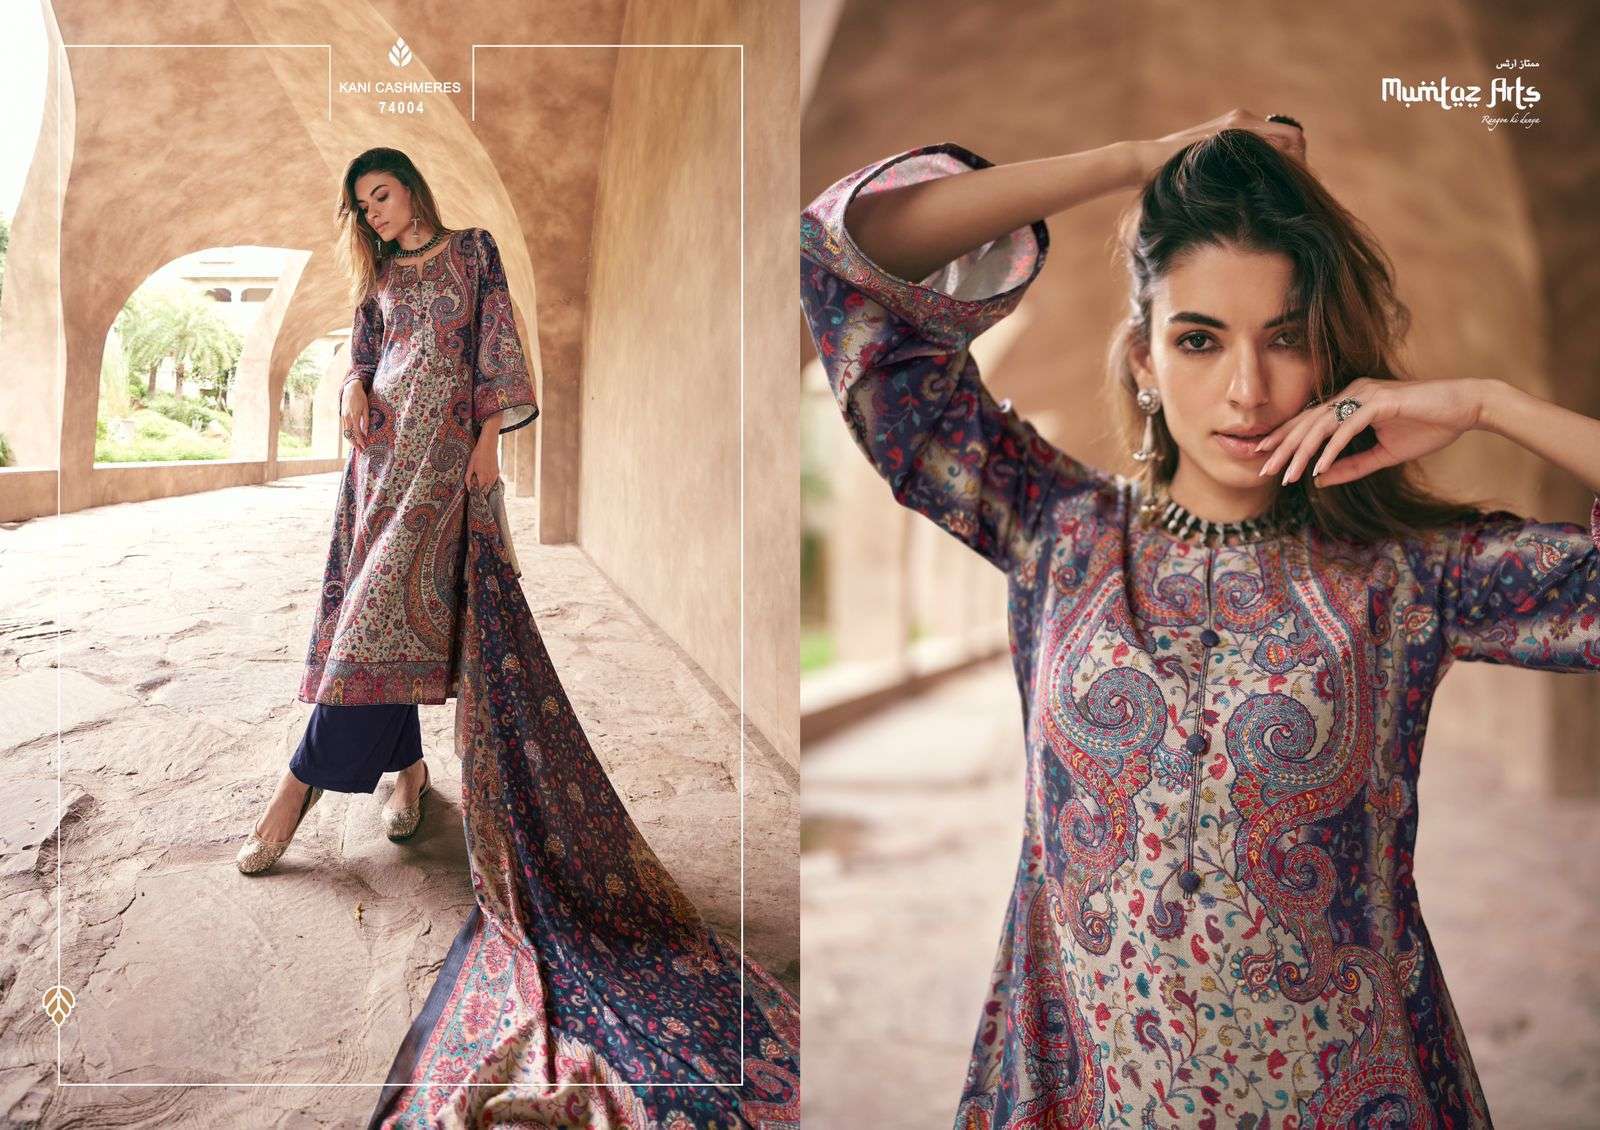 Buy RIWAAYAT TRENDS Women's Winter Wear Kashmiri Kani Printed Warm Salwar  Kameez Dress Material with Swaroski Work and Twill Pashmina Printed Shawl  Dupatta at Amazon.in